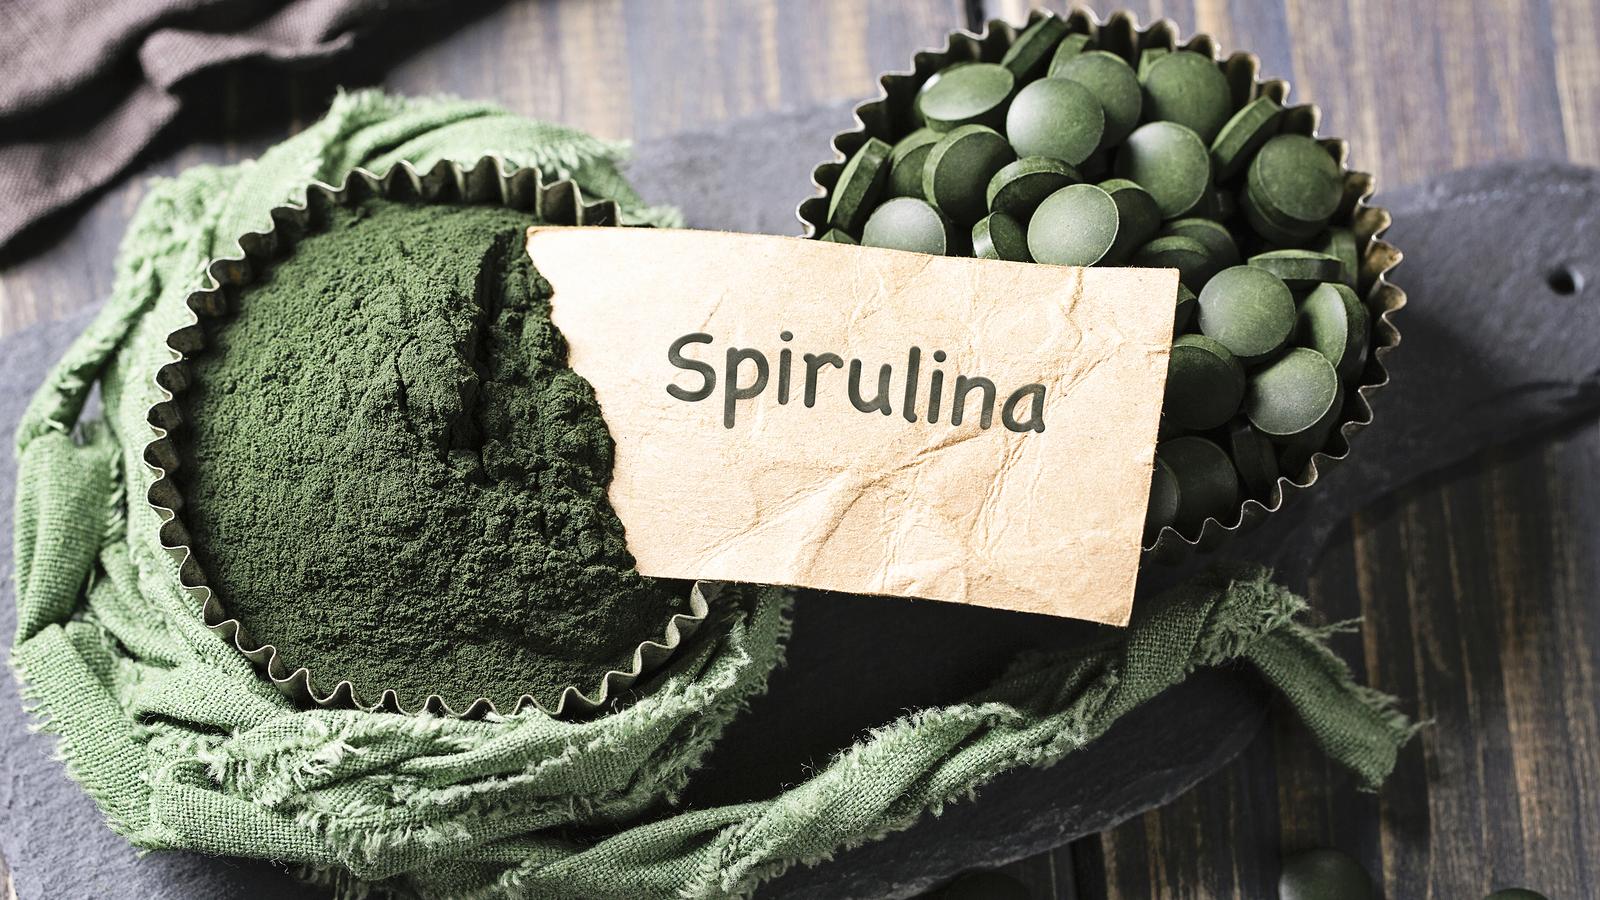 Spirulina Alge statt Multivitamin | Die Alge des Jungseins